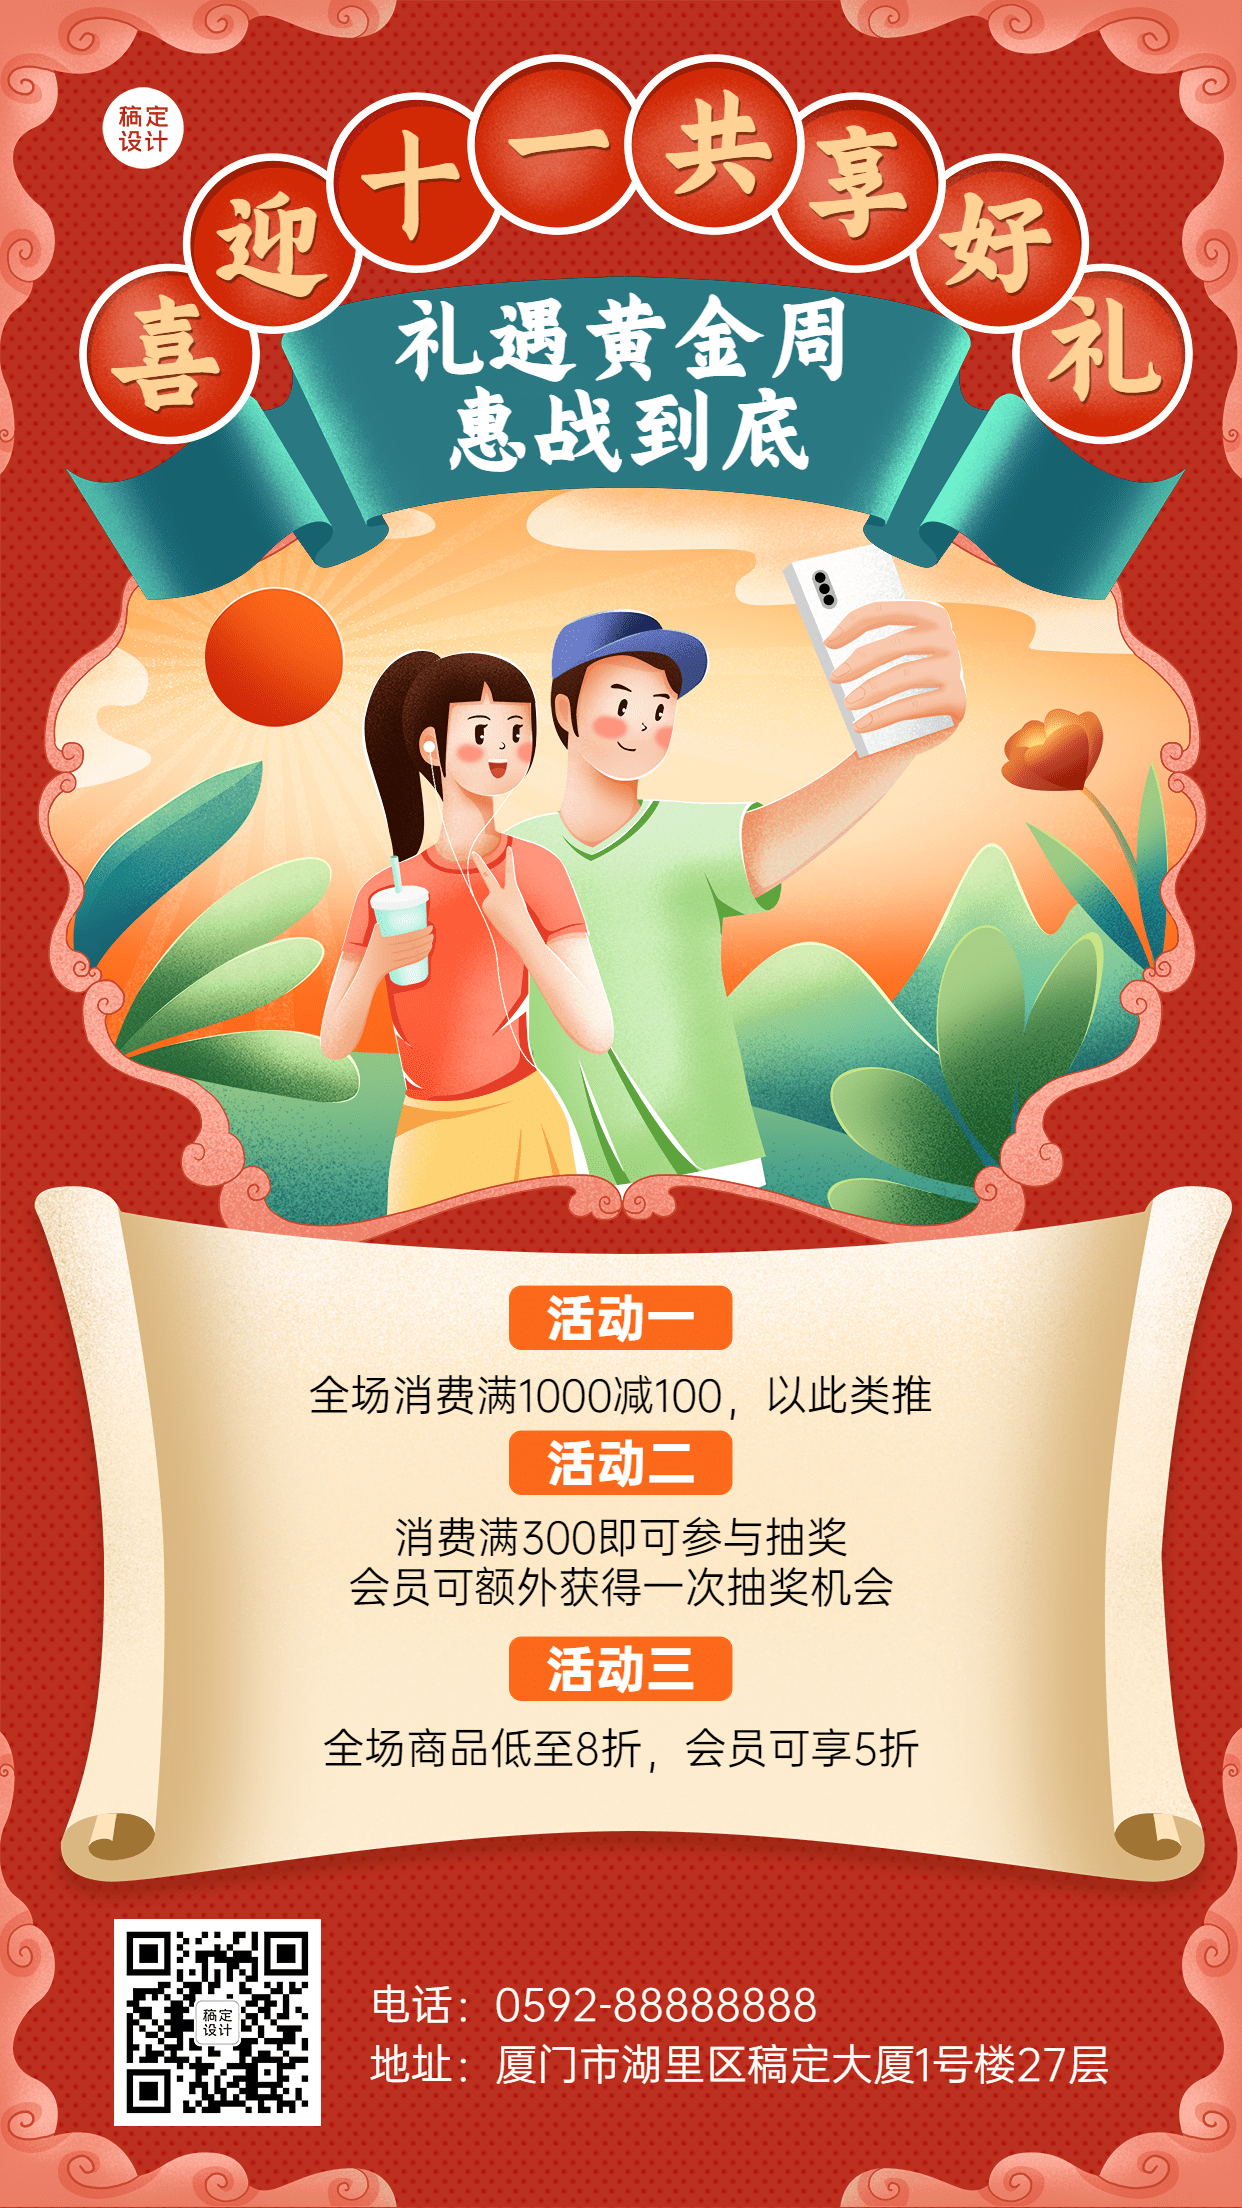 十一黄金周国庆节日活动促销插画手机海报